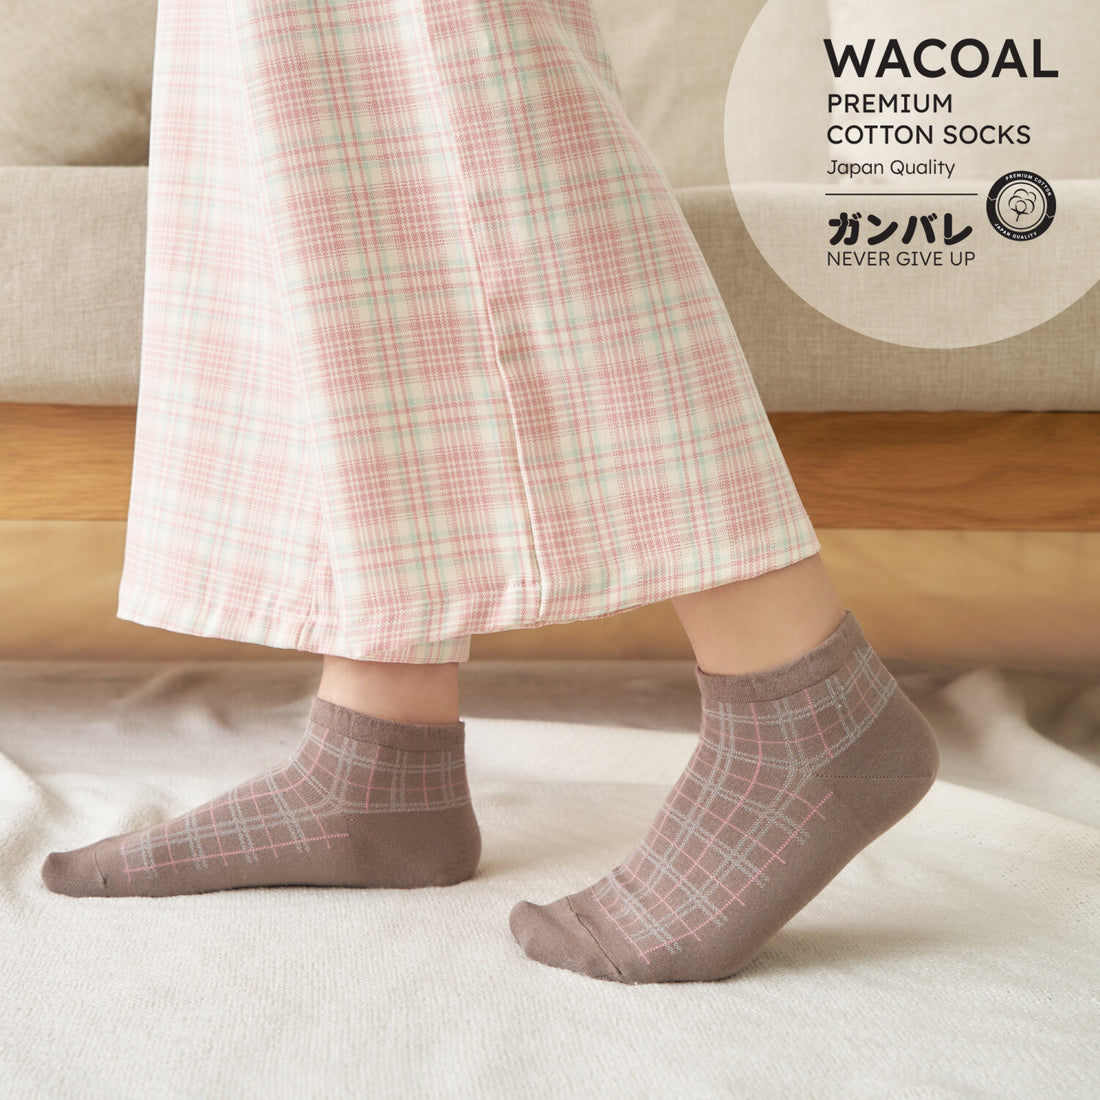 ถุงเท้าข้อสั้น Premium Cotton Socks Selected by Wacoal รุ่น WW110300 สีโอวัลติน (OT)